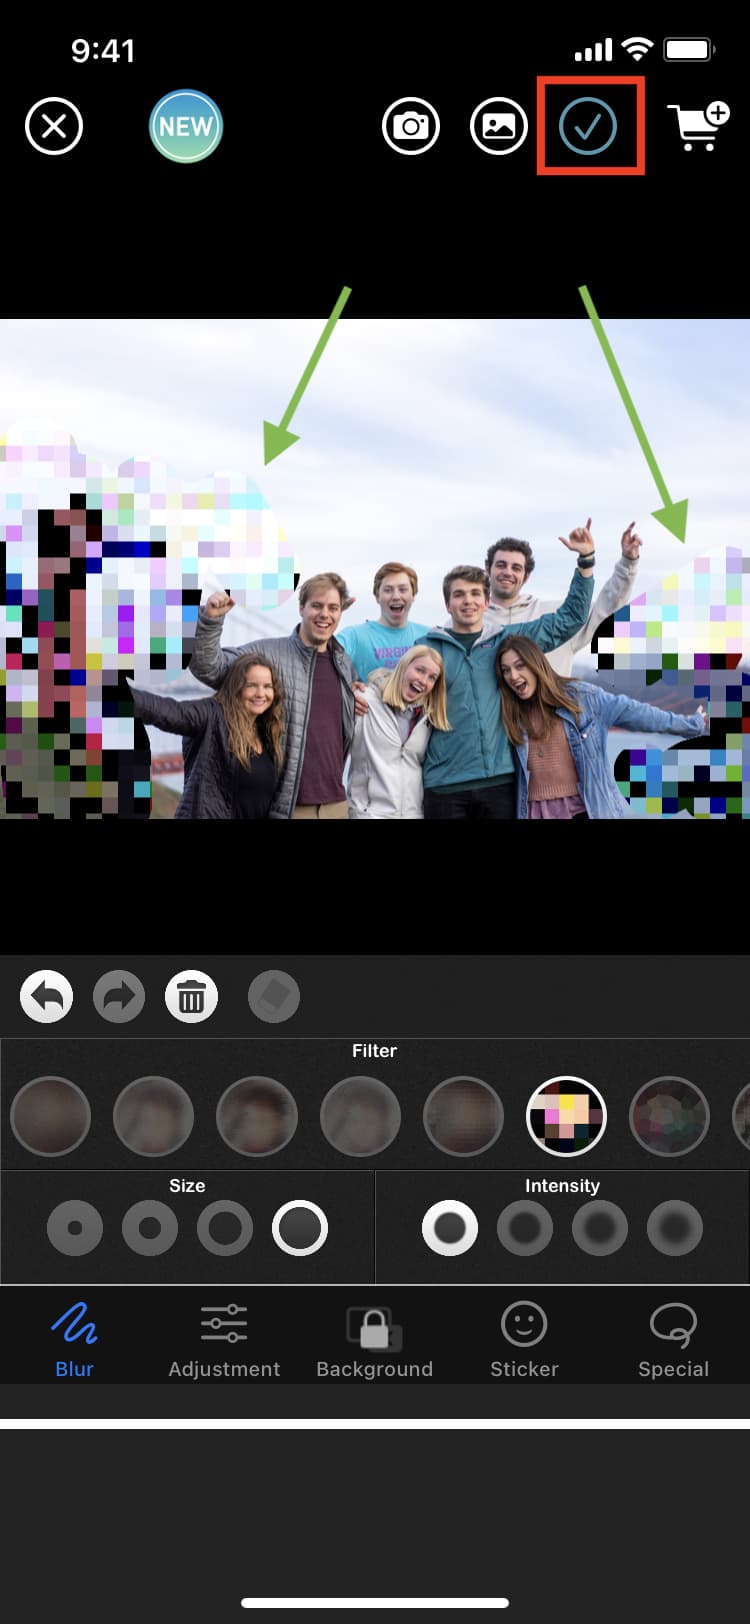 Tambahkan efek pixelate atau blur dan simpan gambar akhir ke aplikasi Foto iPhone